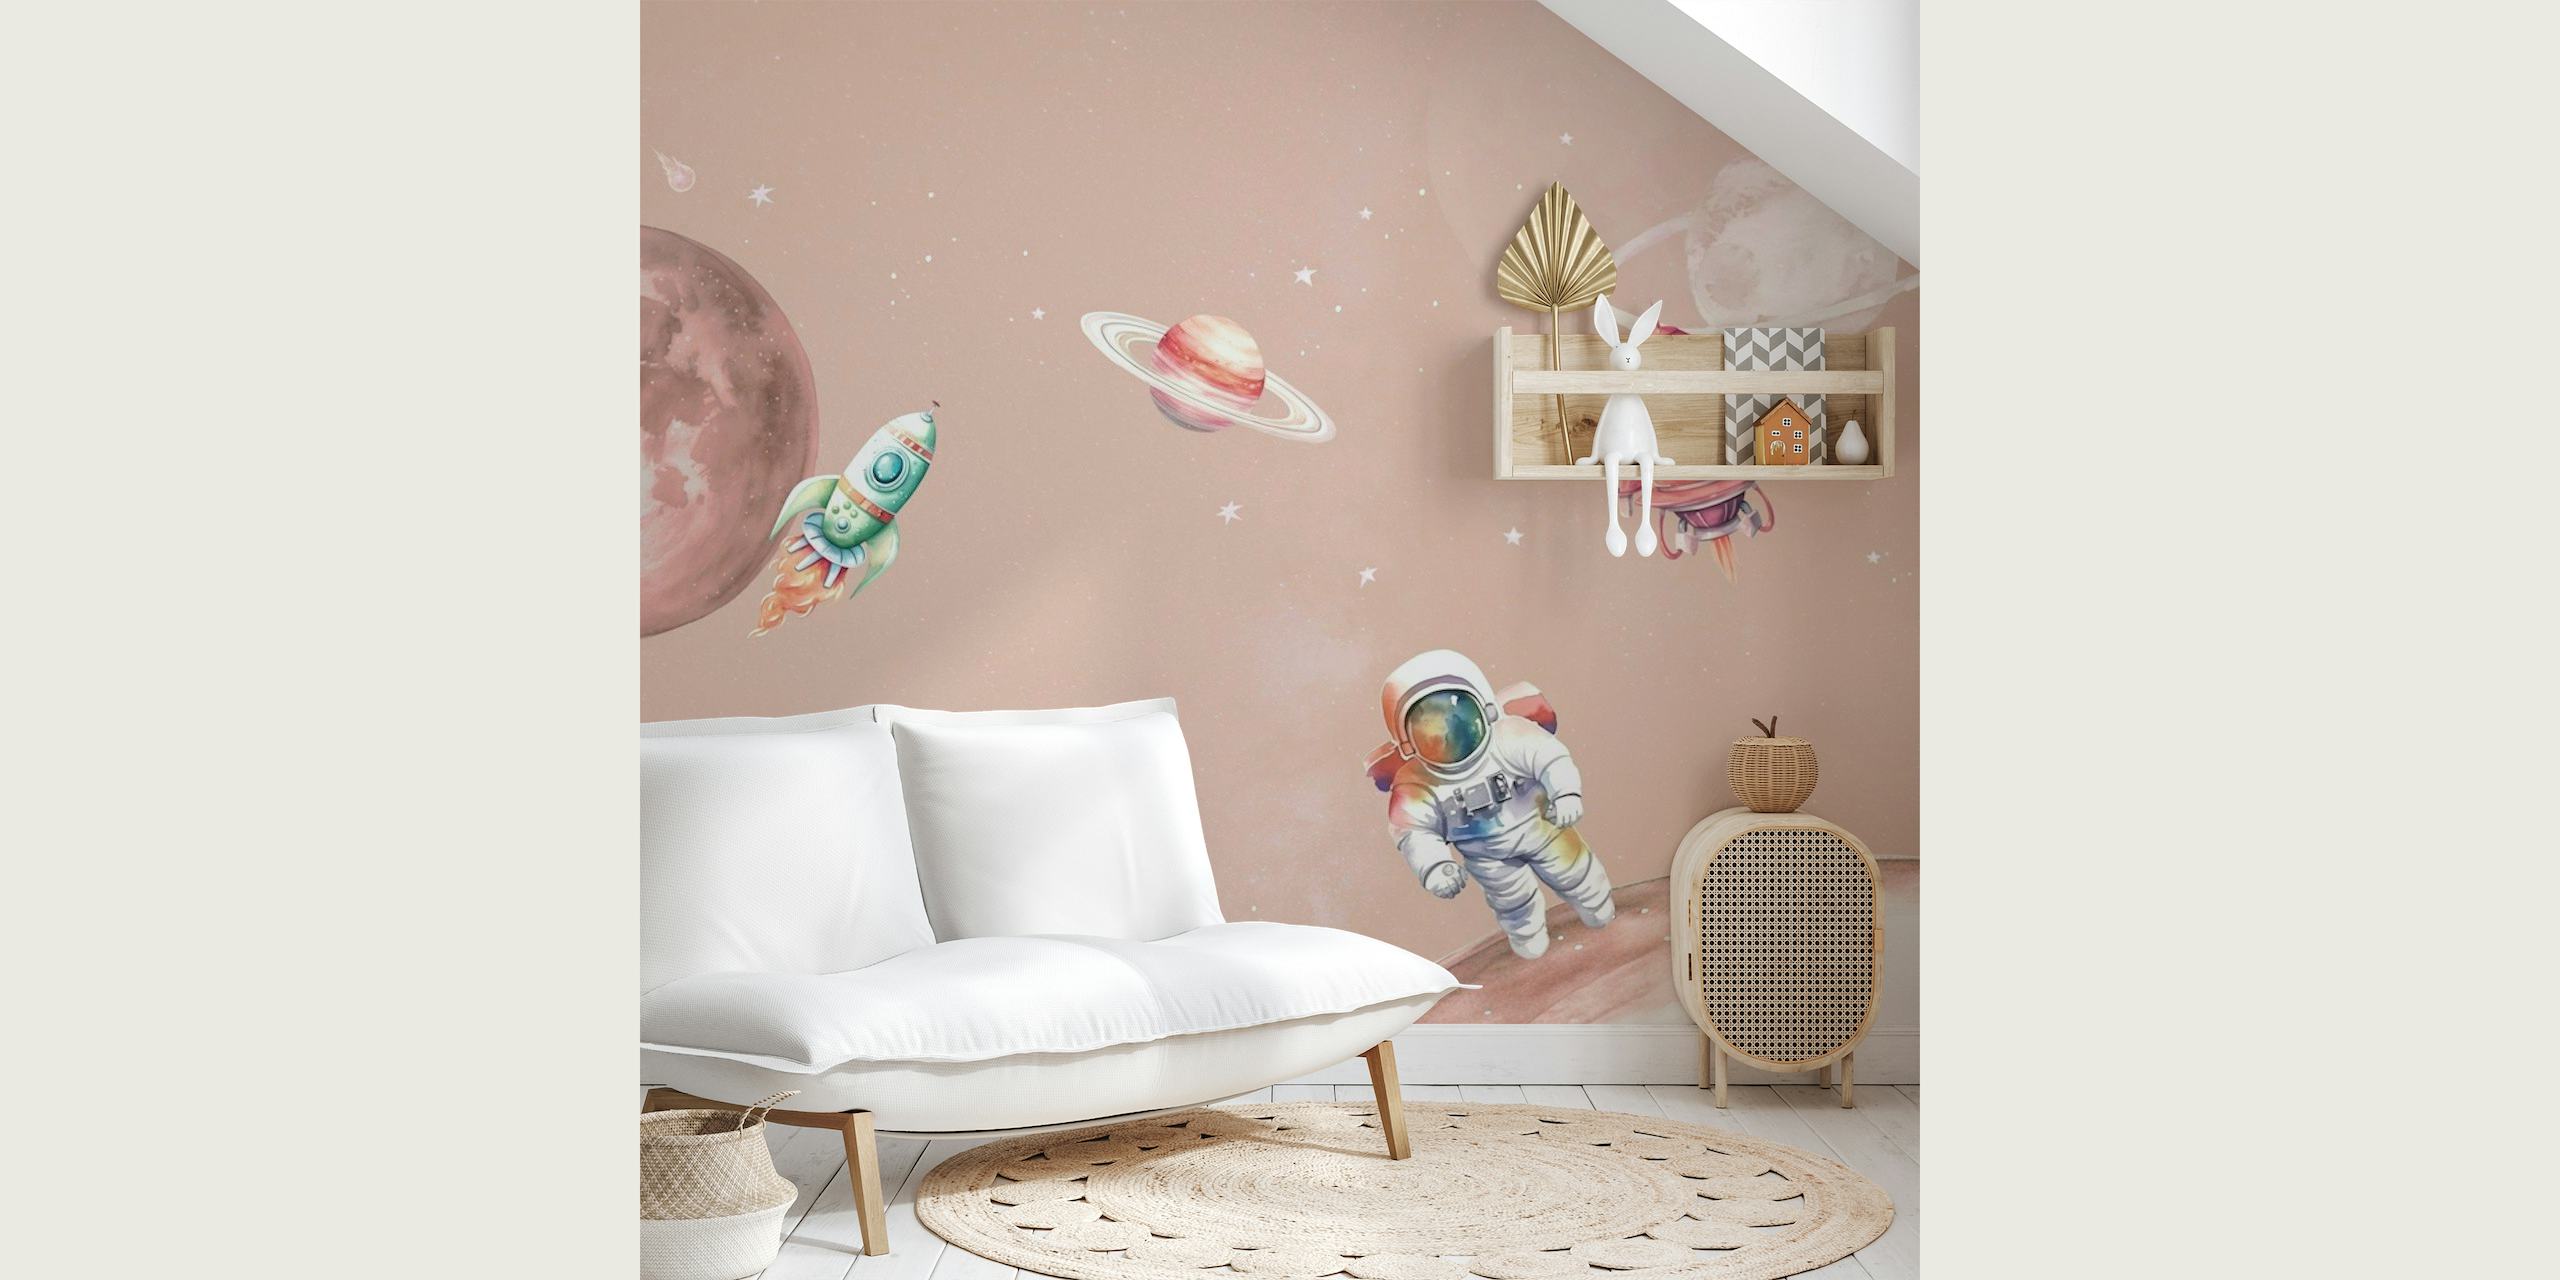 Fotomural vinílico de parede de cena espacial em estilo desenho animado apresentando um astronauta, planetas e naves espaciais em um fundo rosa blush.